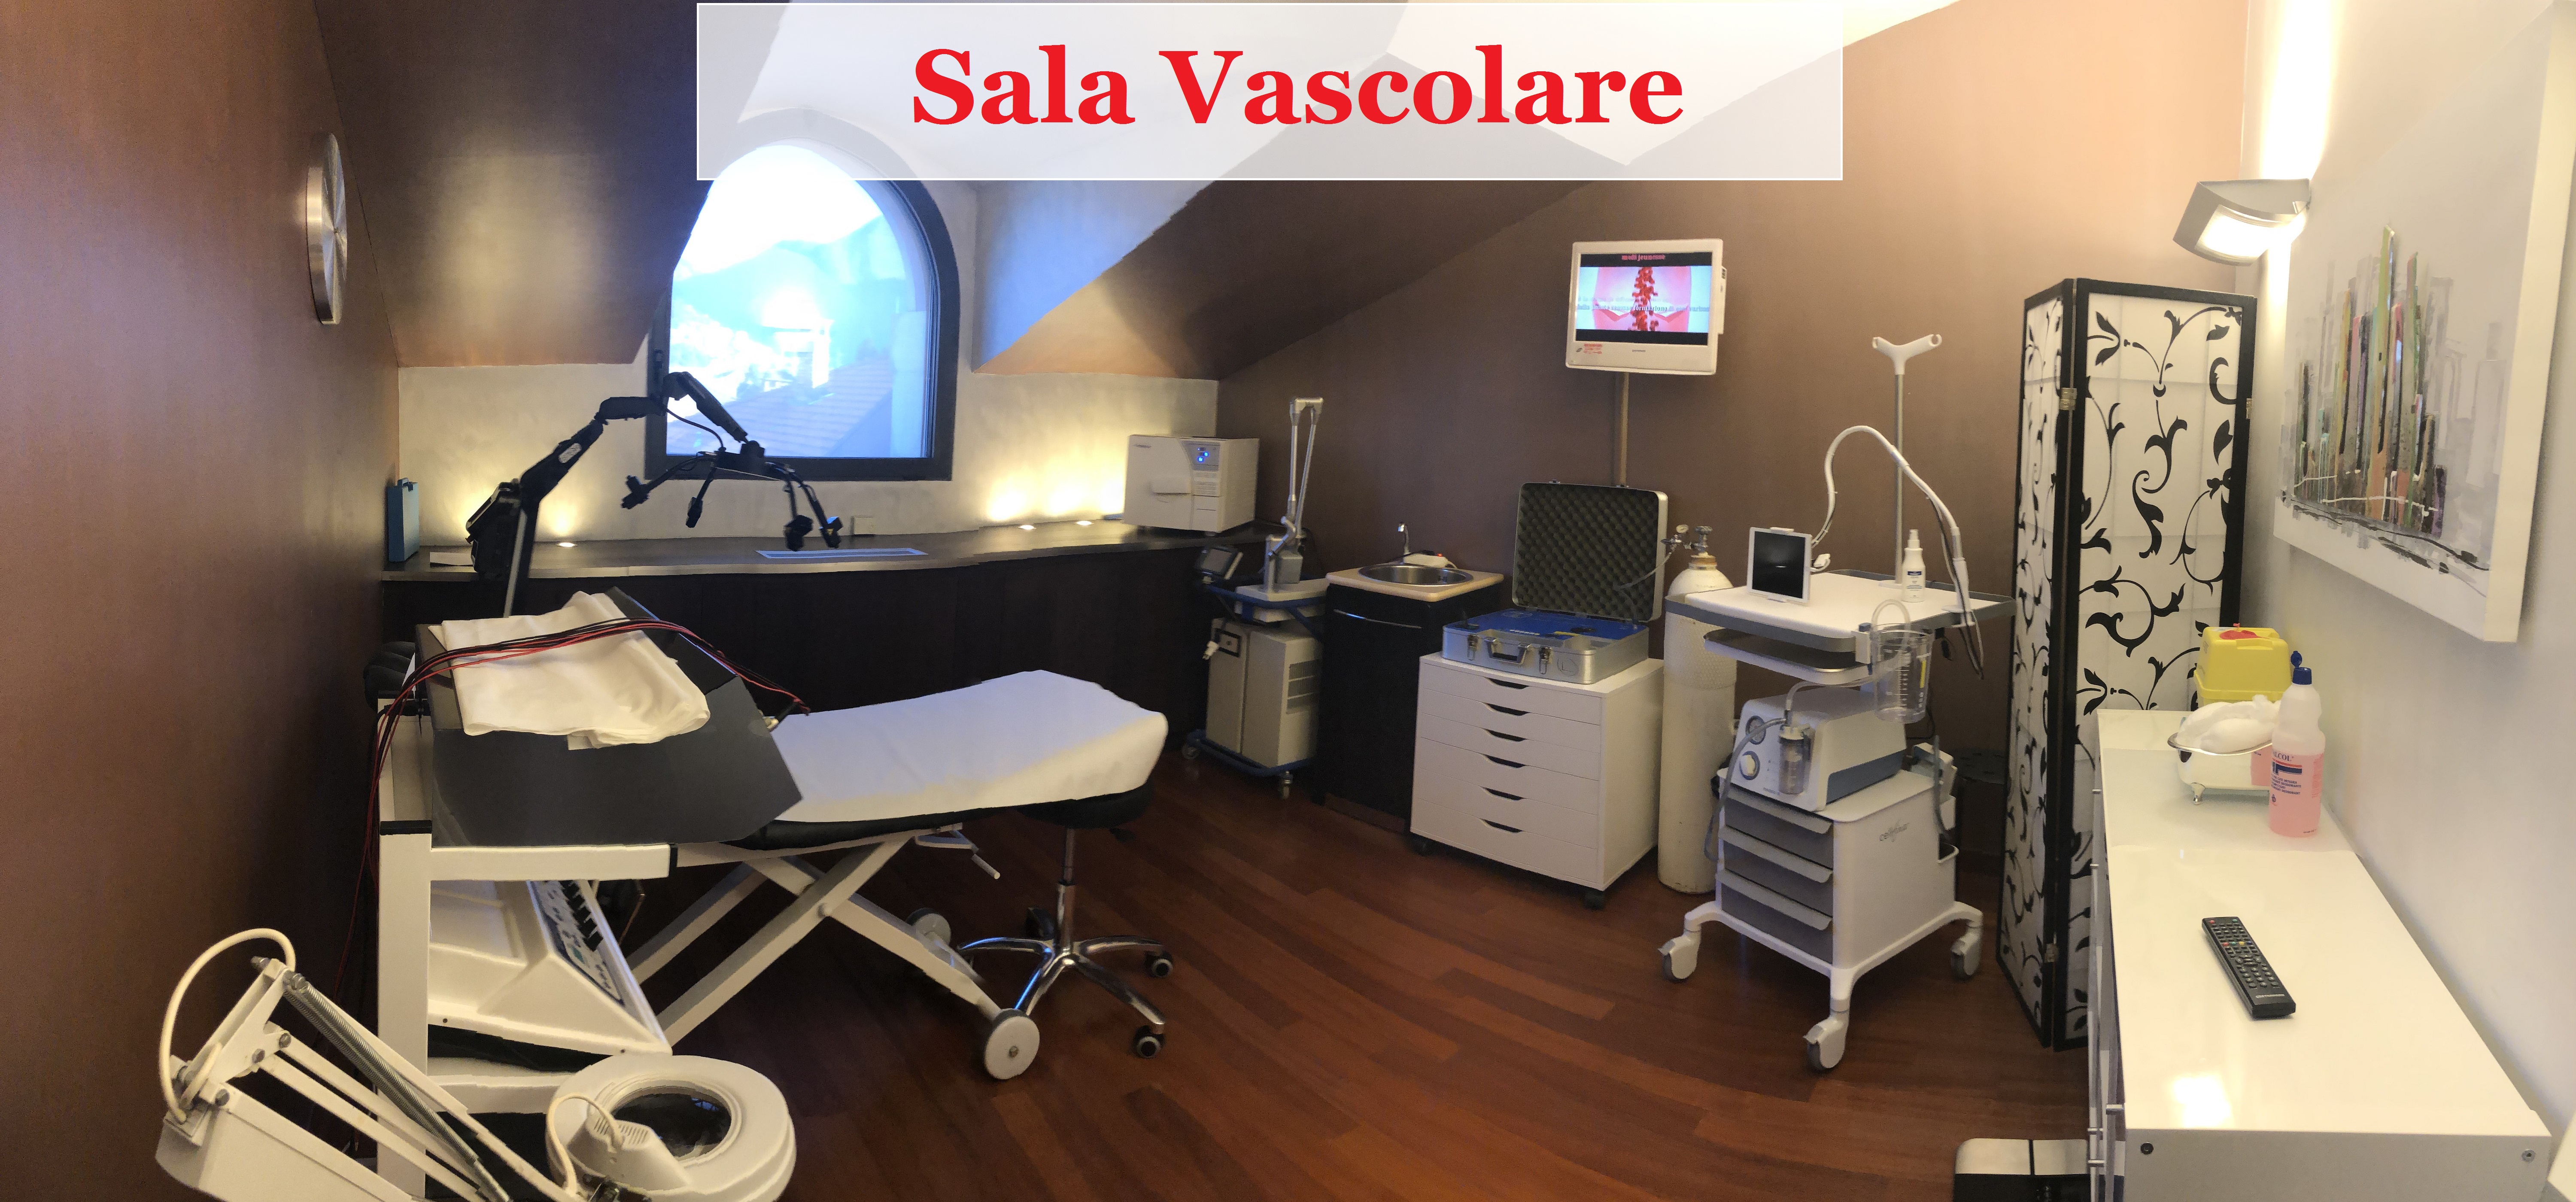 Medi Jeunesse SA - Sala Vascolare - Lugano